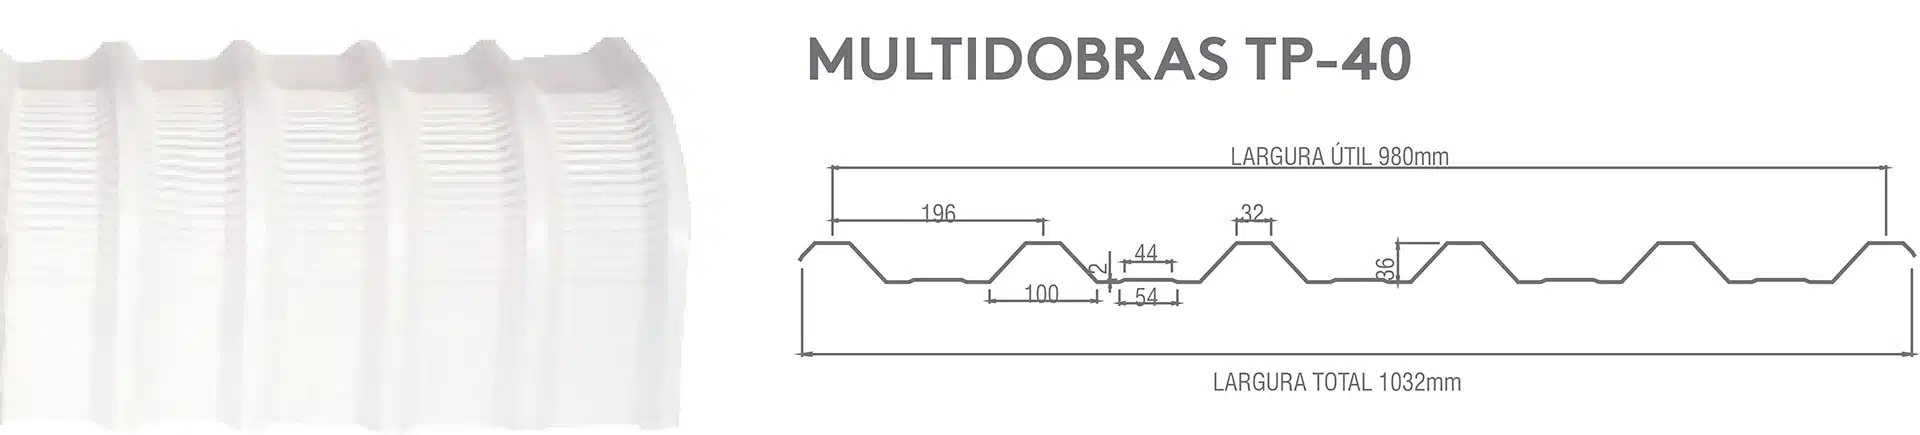 multidobras-tp-40